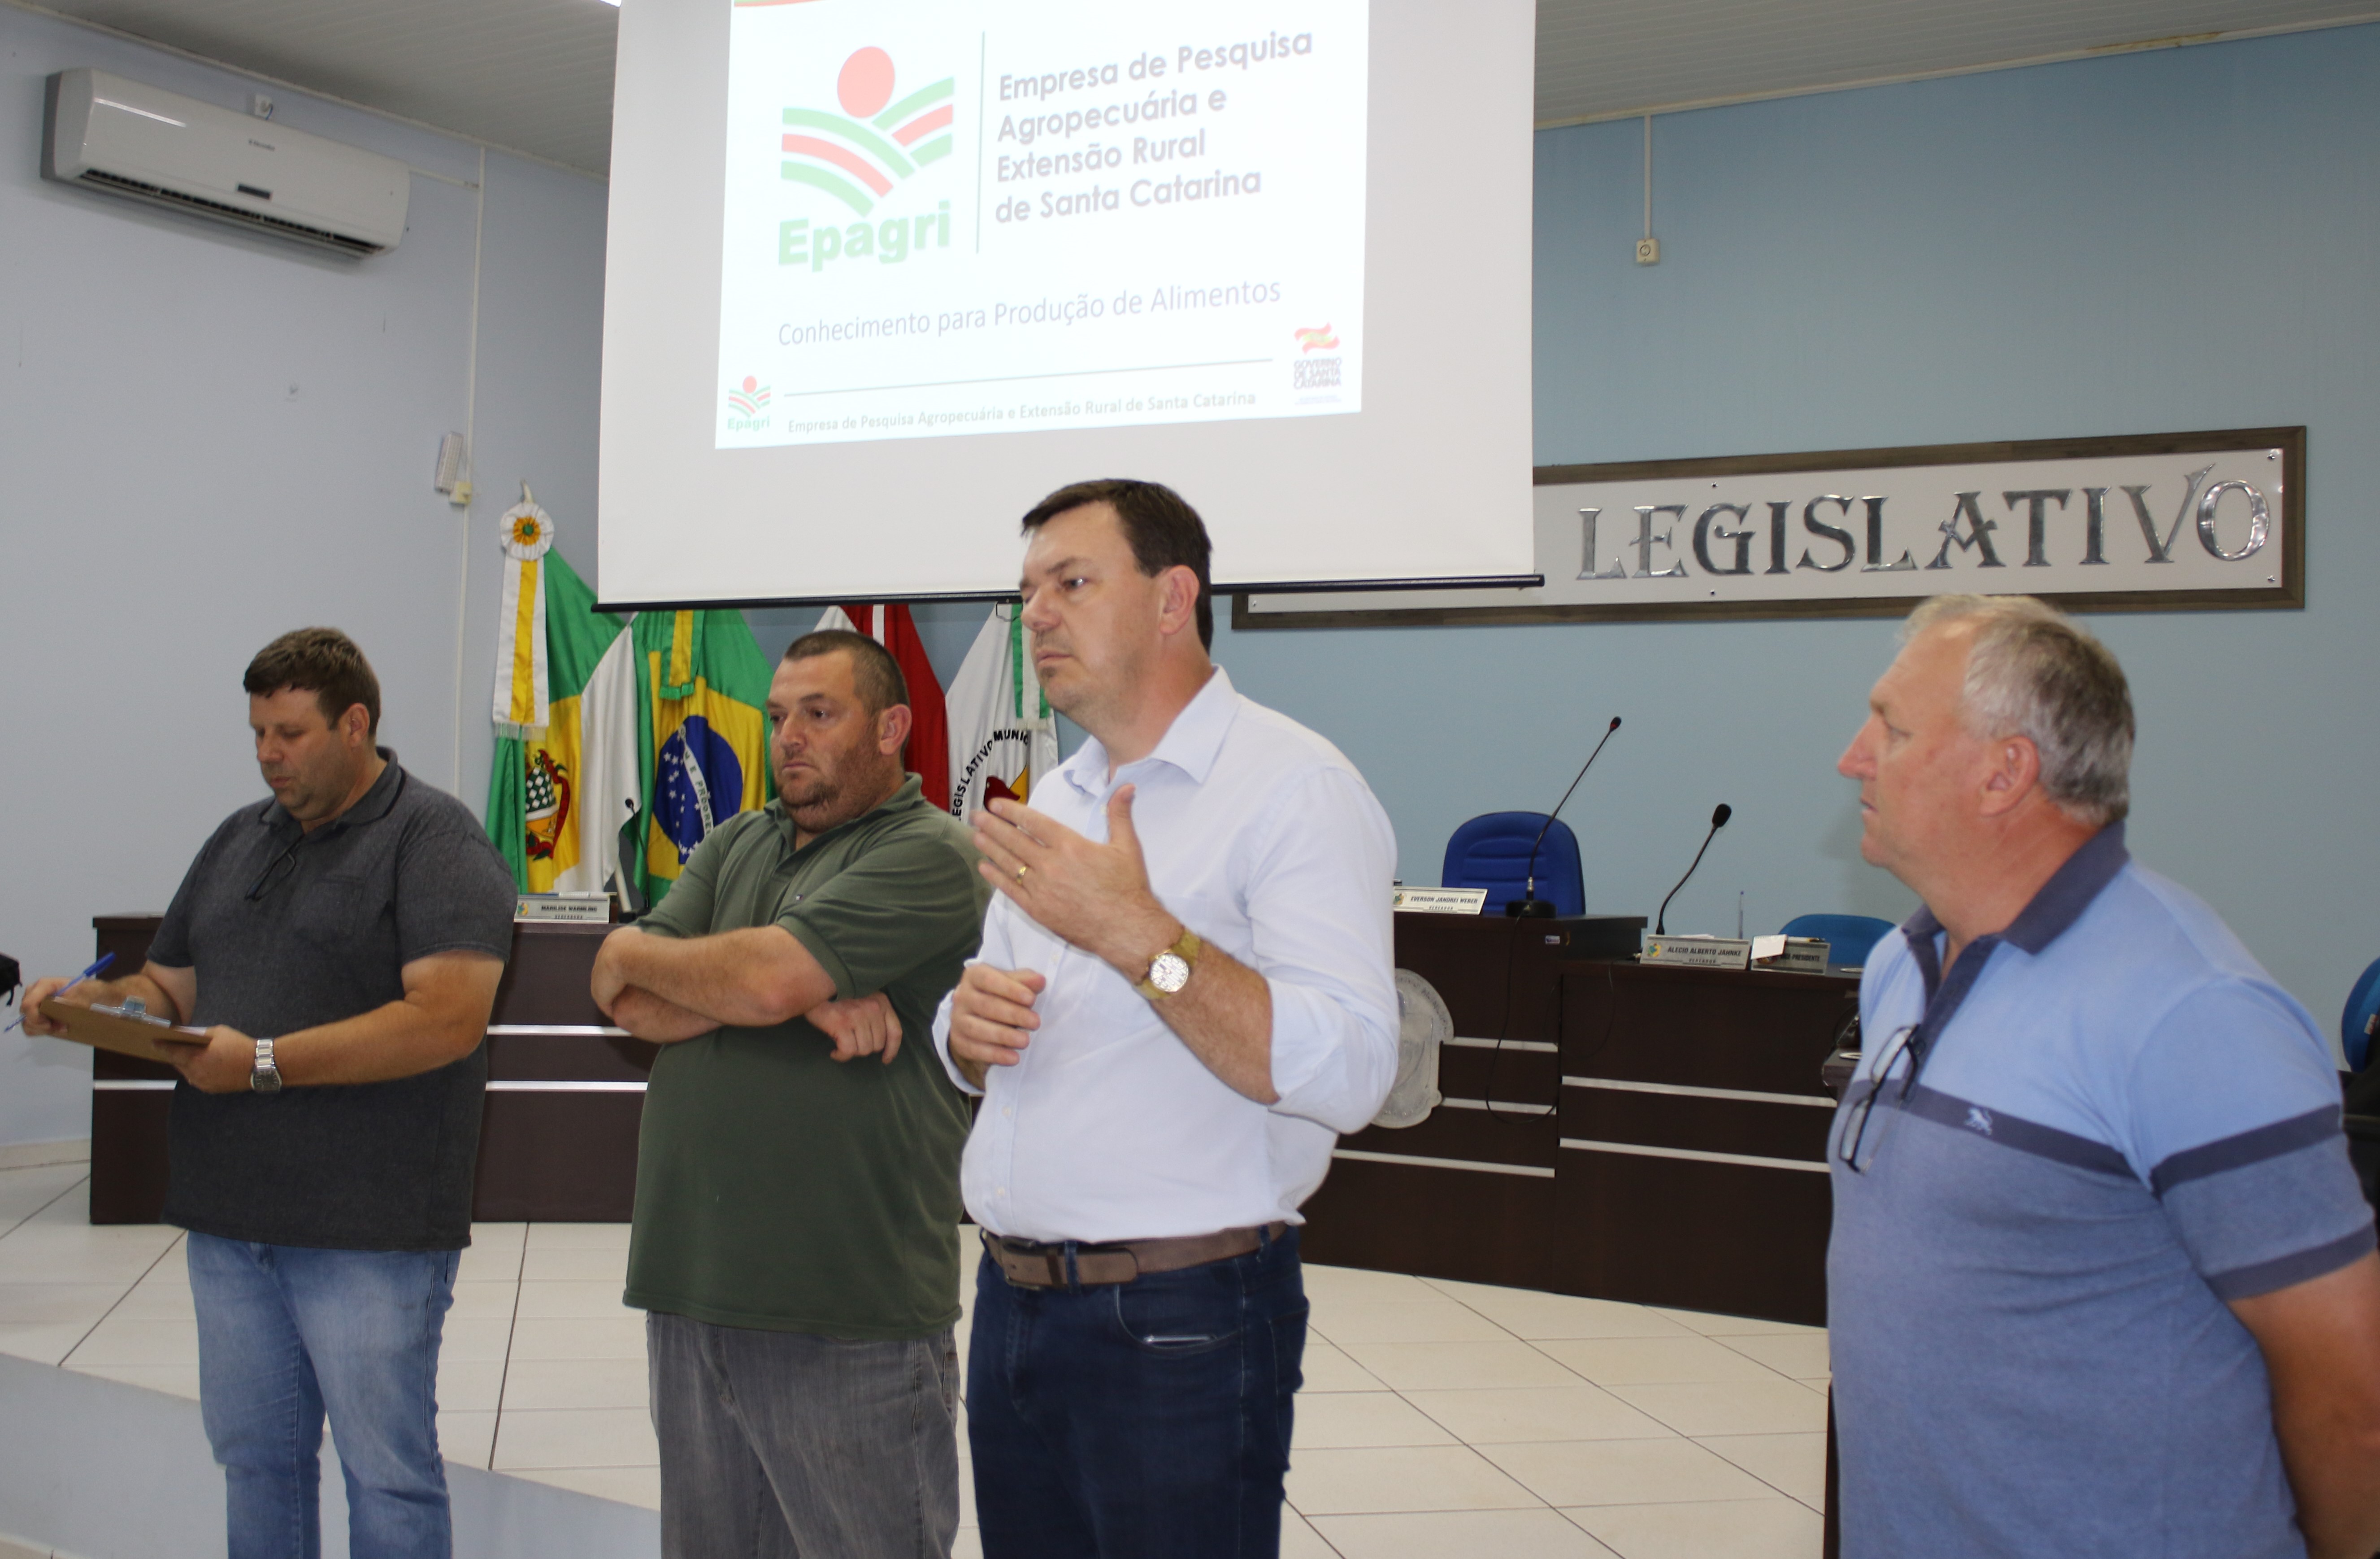 Prefeito Daniel e Secretário João Brancher falaram sobre a importância do Conselho de Agricultura do município, bem como sintetizaram as principais ações desenvolvidas pela administração neste ano de 2018